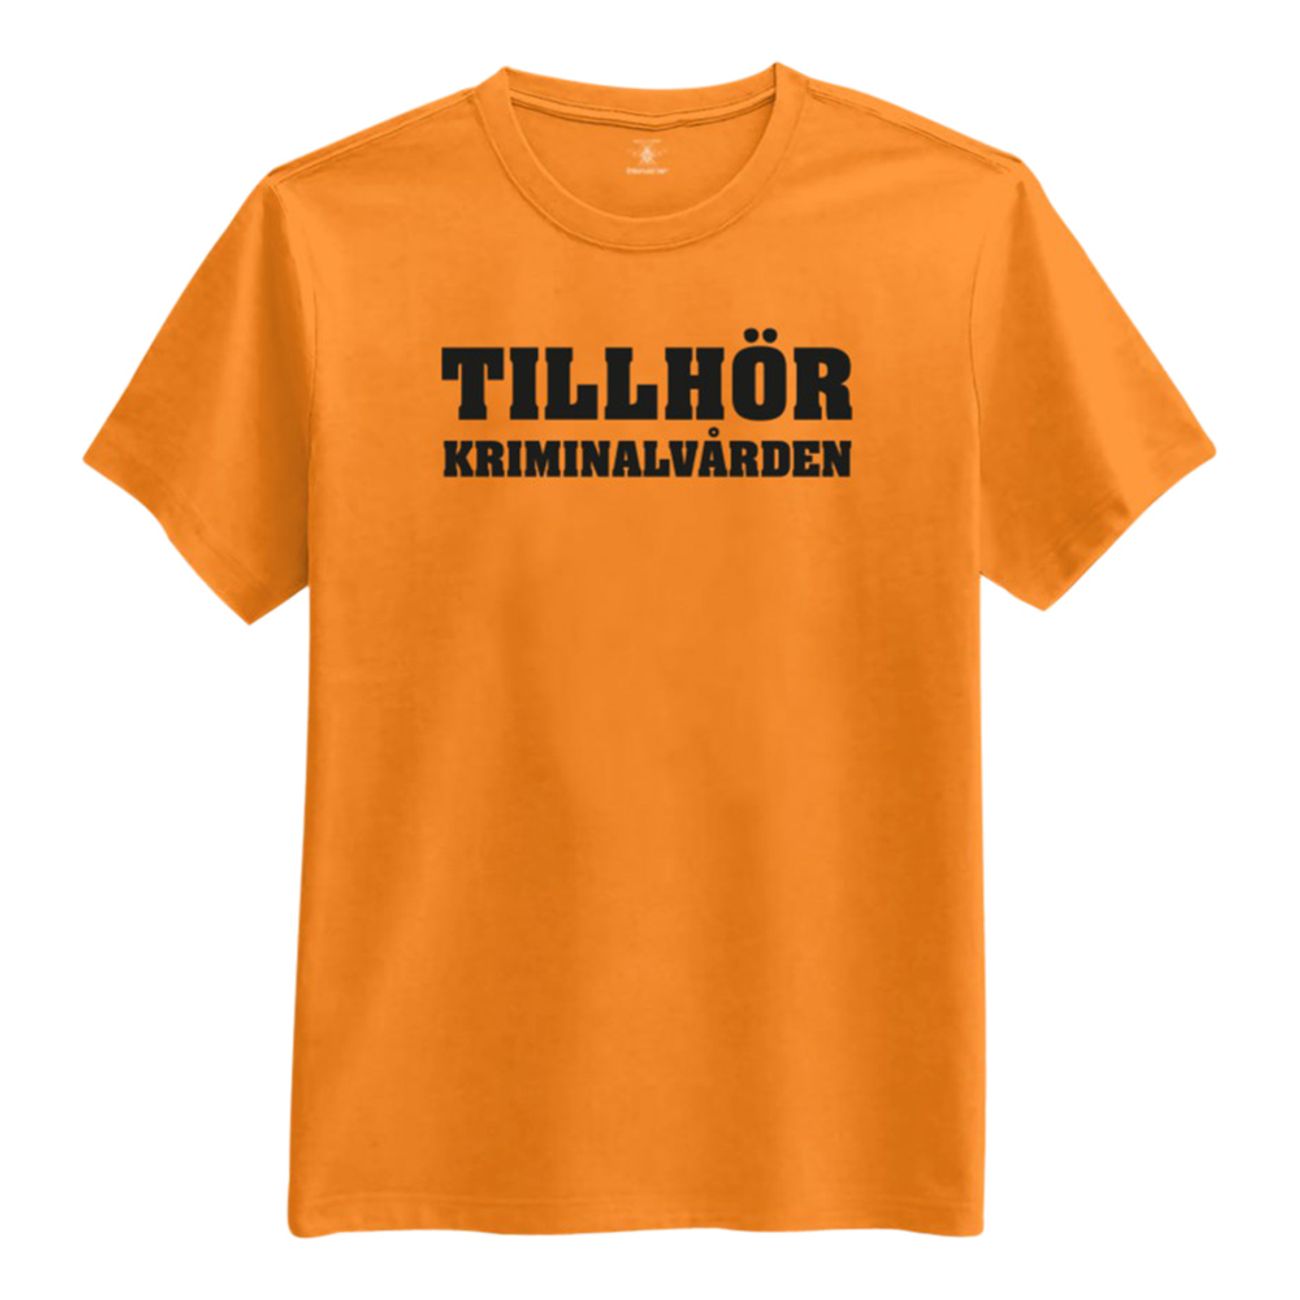 tillhor-kriminalvarden-t-shirt-2